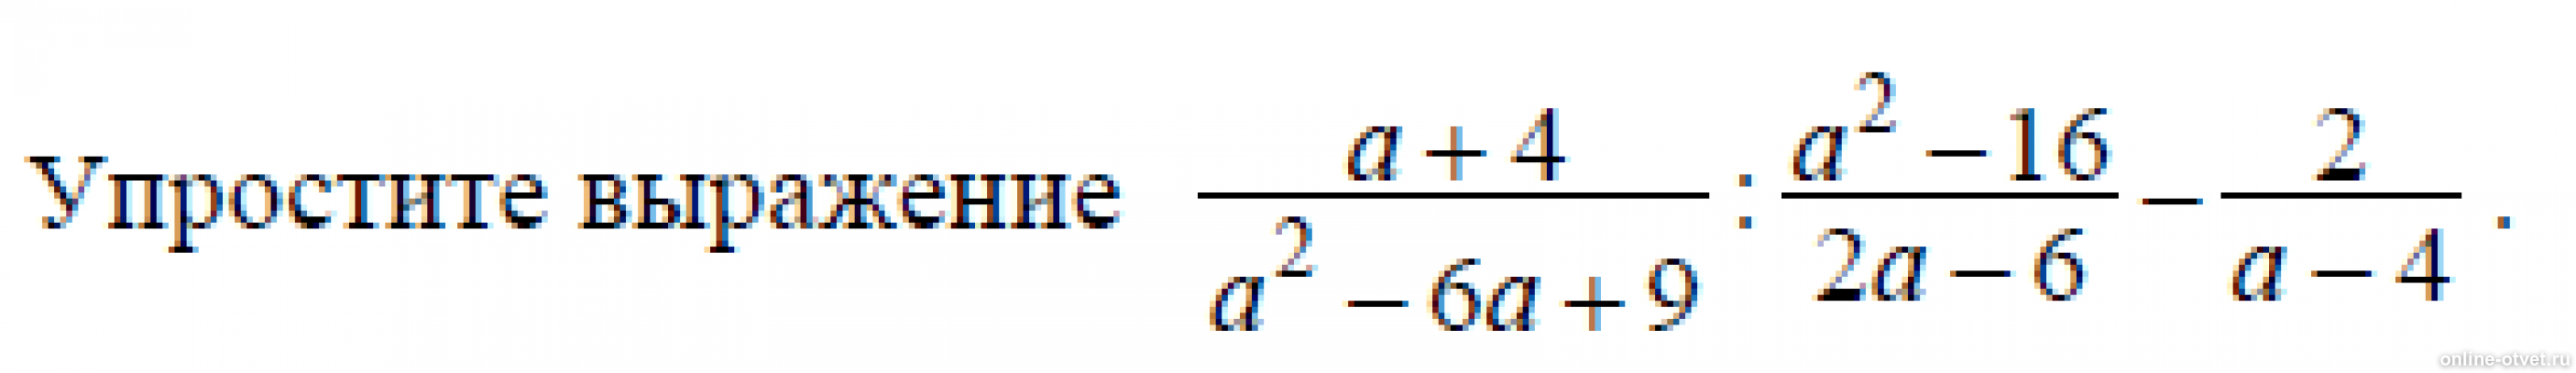 Упростите 3x 1 x 9 3x. A-4/A^2+4+16 упростить выражение. Упростите выражения (a-8)^2. Упростите выражения а+2 а-3-4-а а+4. Упростите выражение 4a/a^2-4 * a+2/2a.